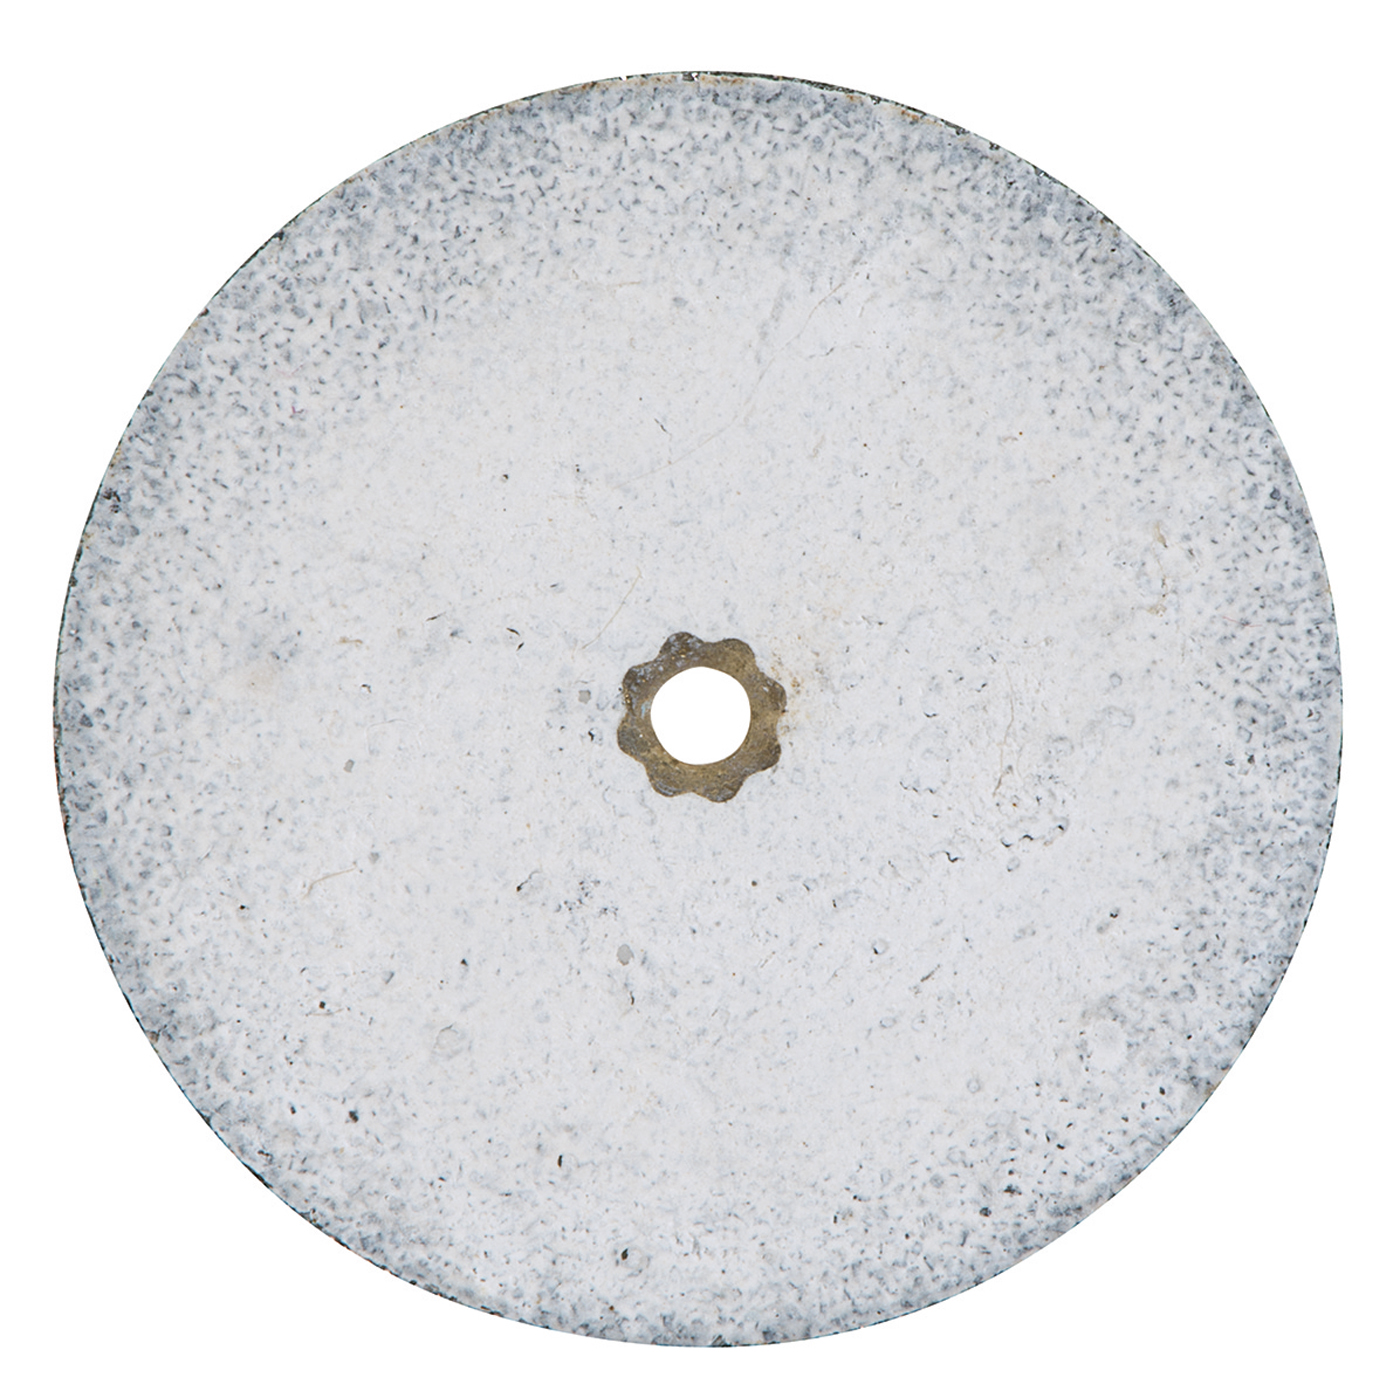 Heatless Grinding Discs, ø 25 x 3 mm - 50 pieces